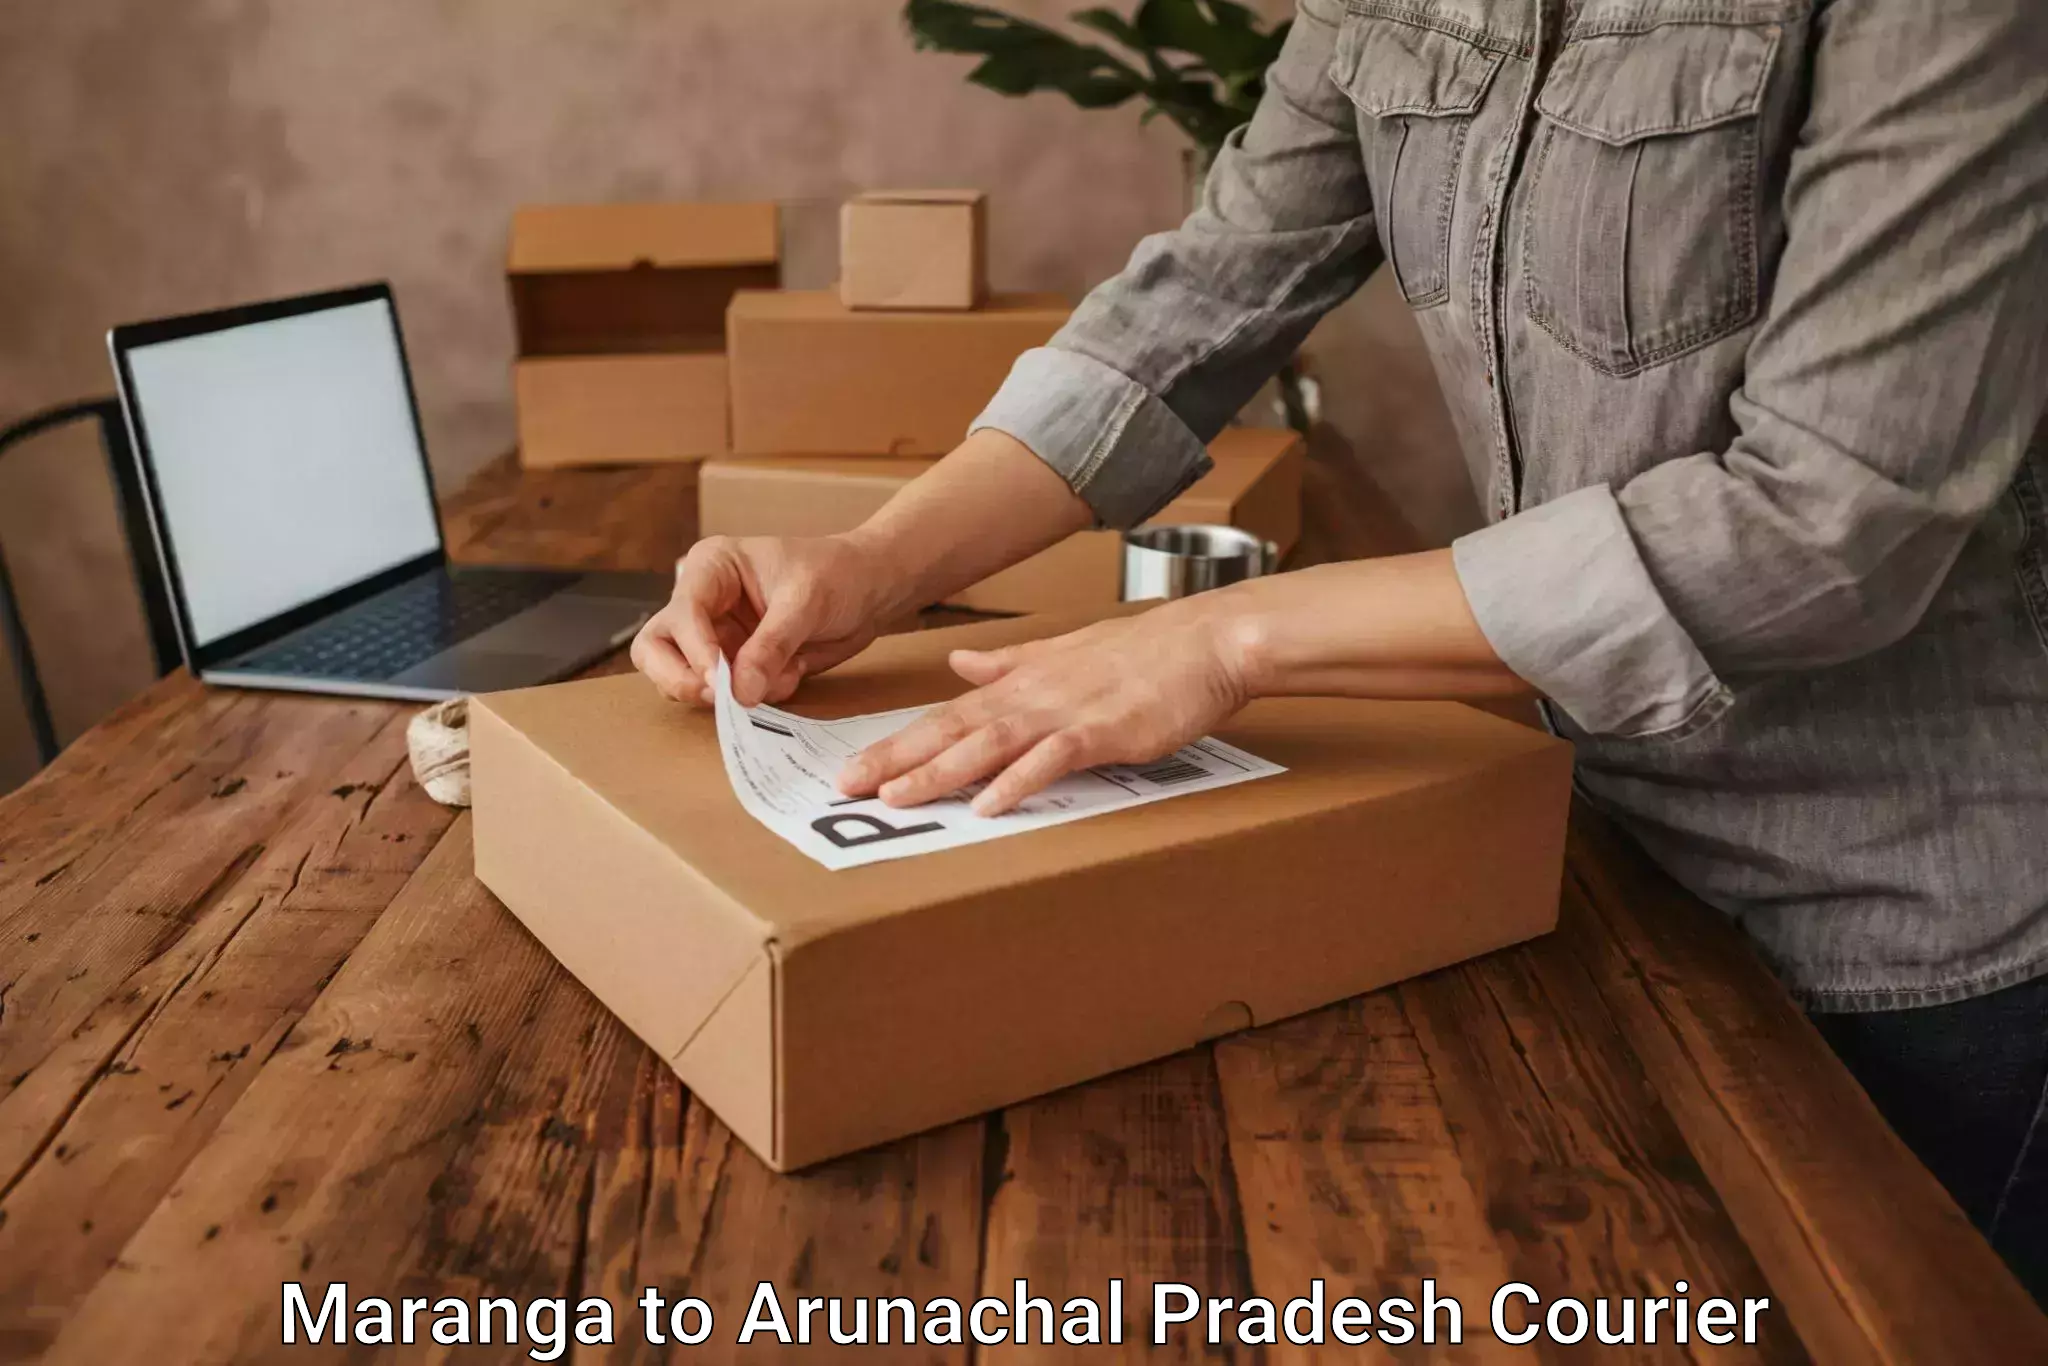 Trusted relocation experts Maranga to Arunachal Pradesh